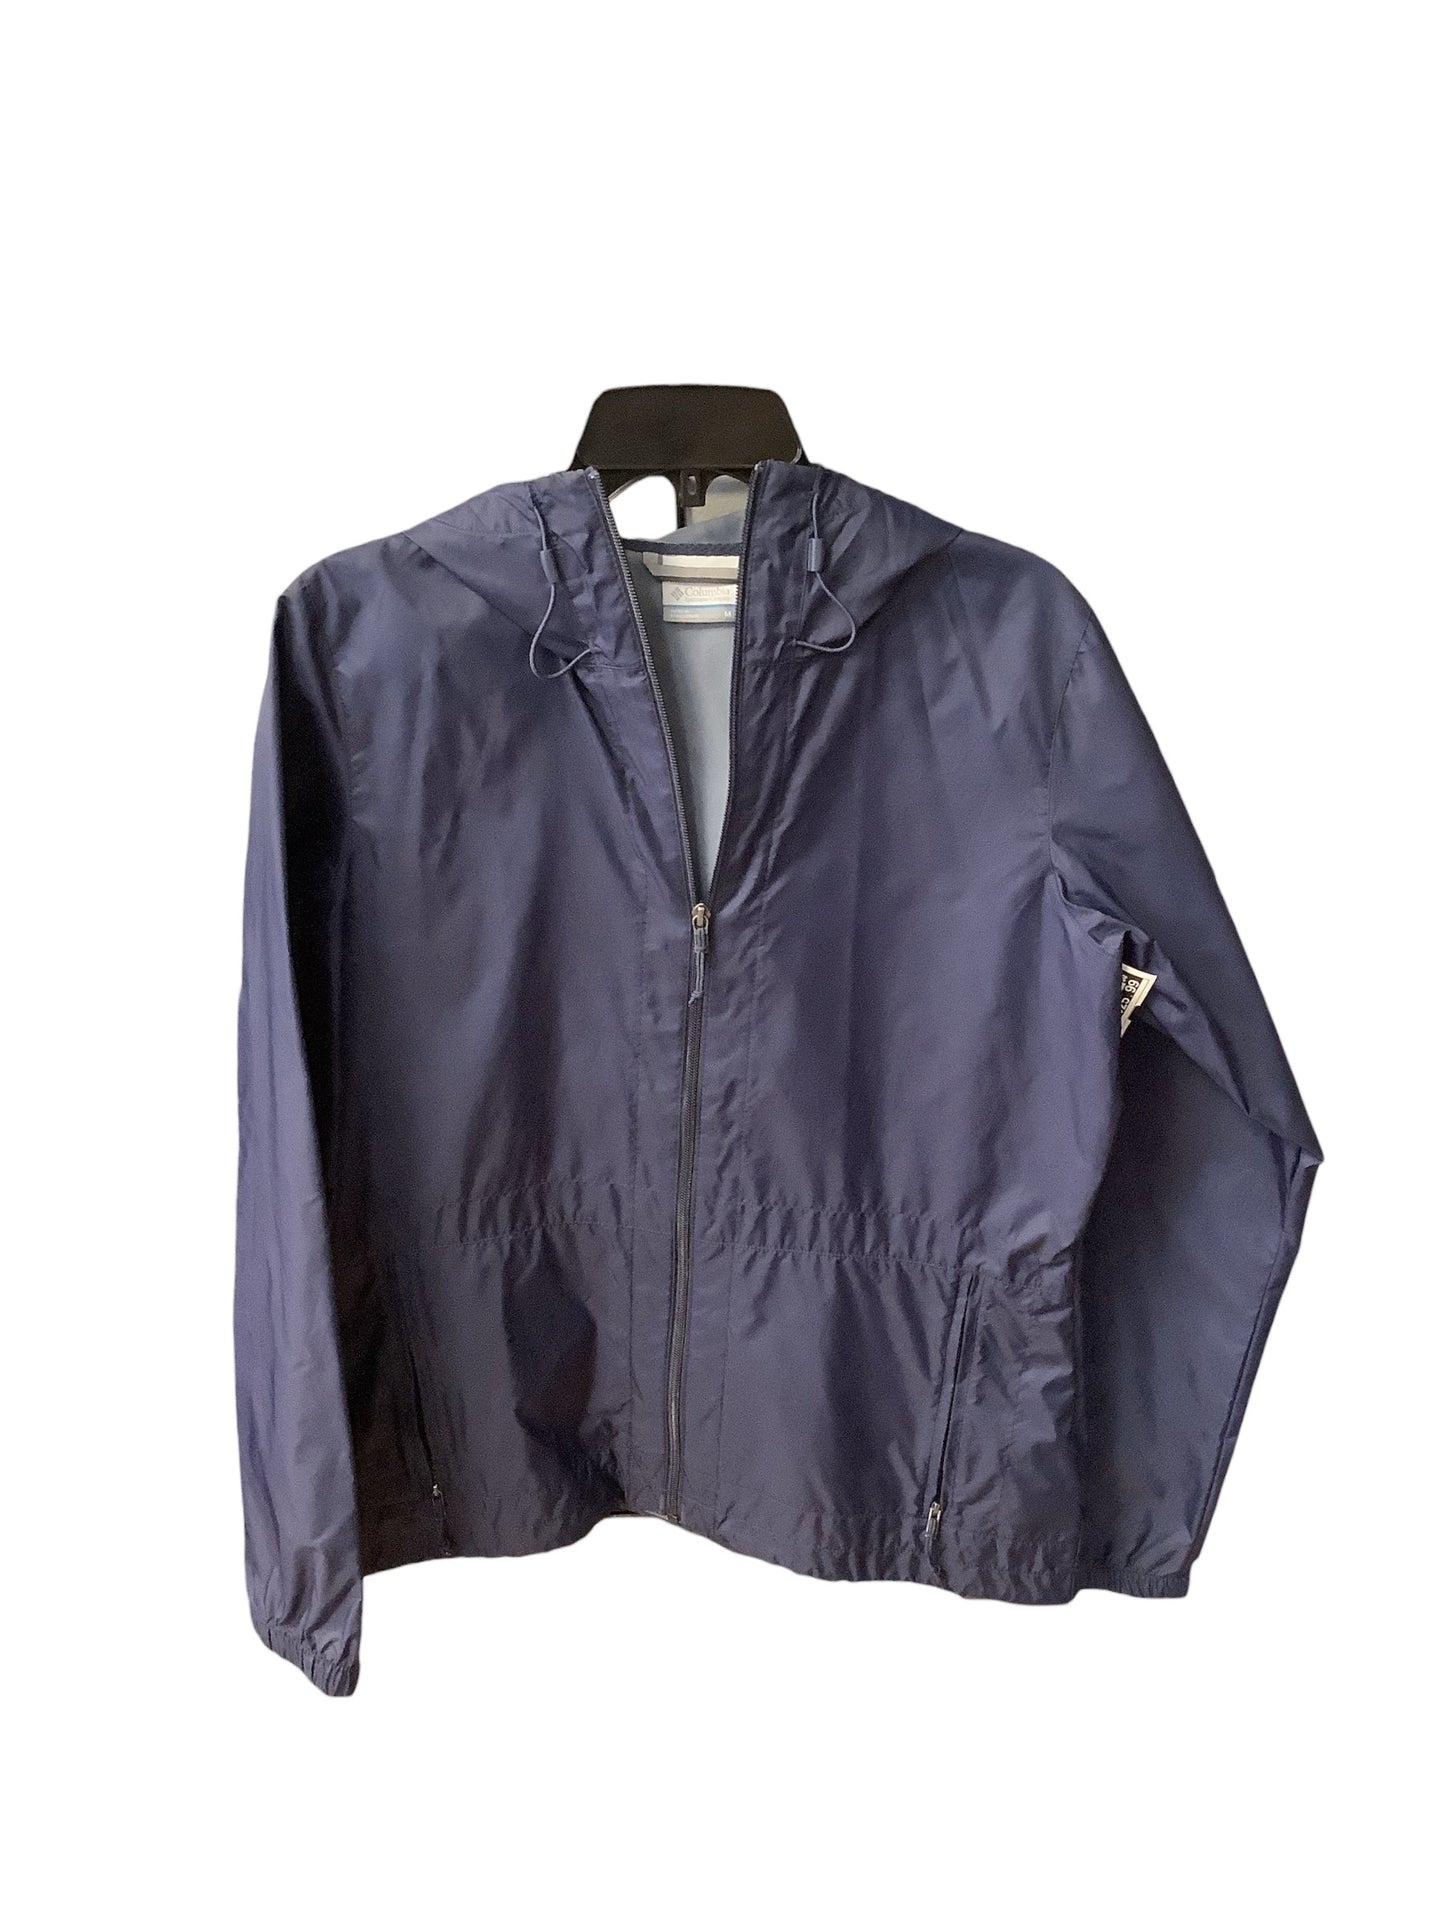 Jacket Windbreaker By Columbia  Size: M